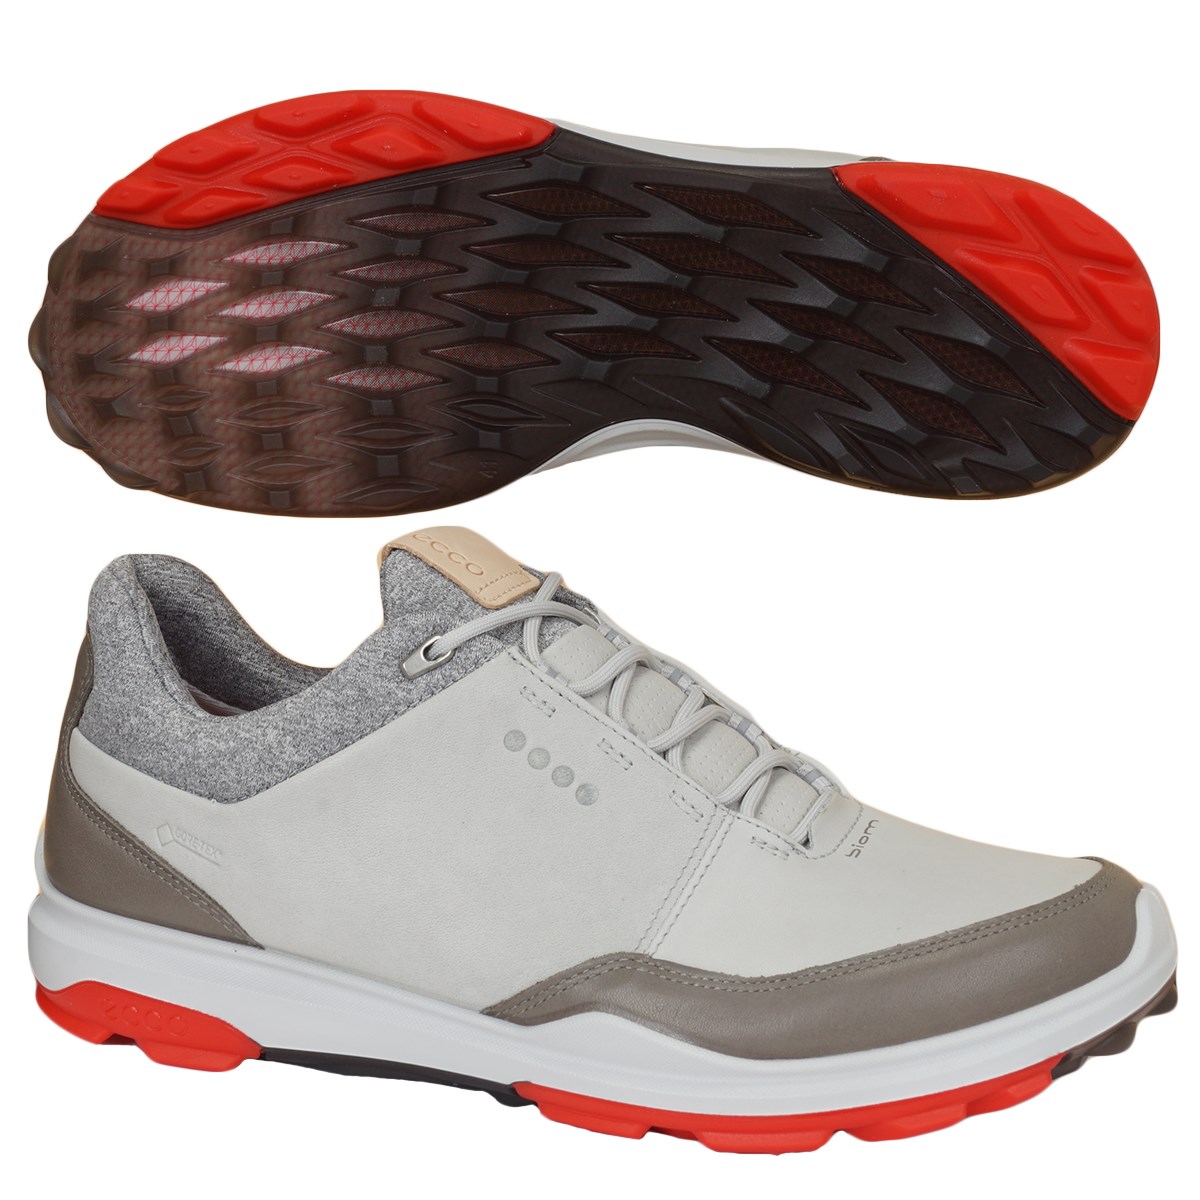 歩きやすい 運動靴 ブランド  通気 軽量 ソフトスパイク  人気新品入荷 ゴルフシューズ メンズ   スパイクレスシューズ 幅広 メッシュ  スポーツシューズ 強いグリップ 柔らか